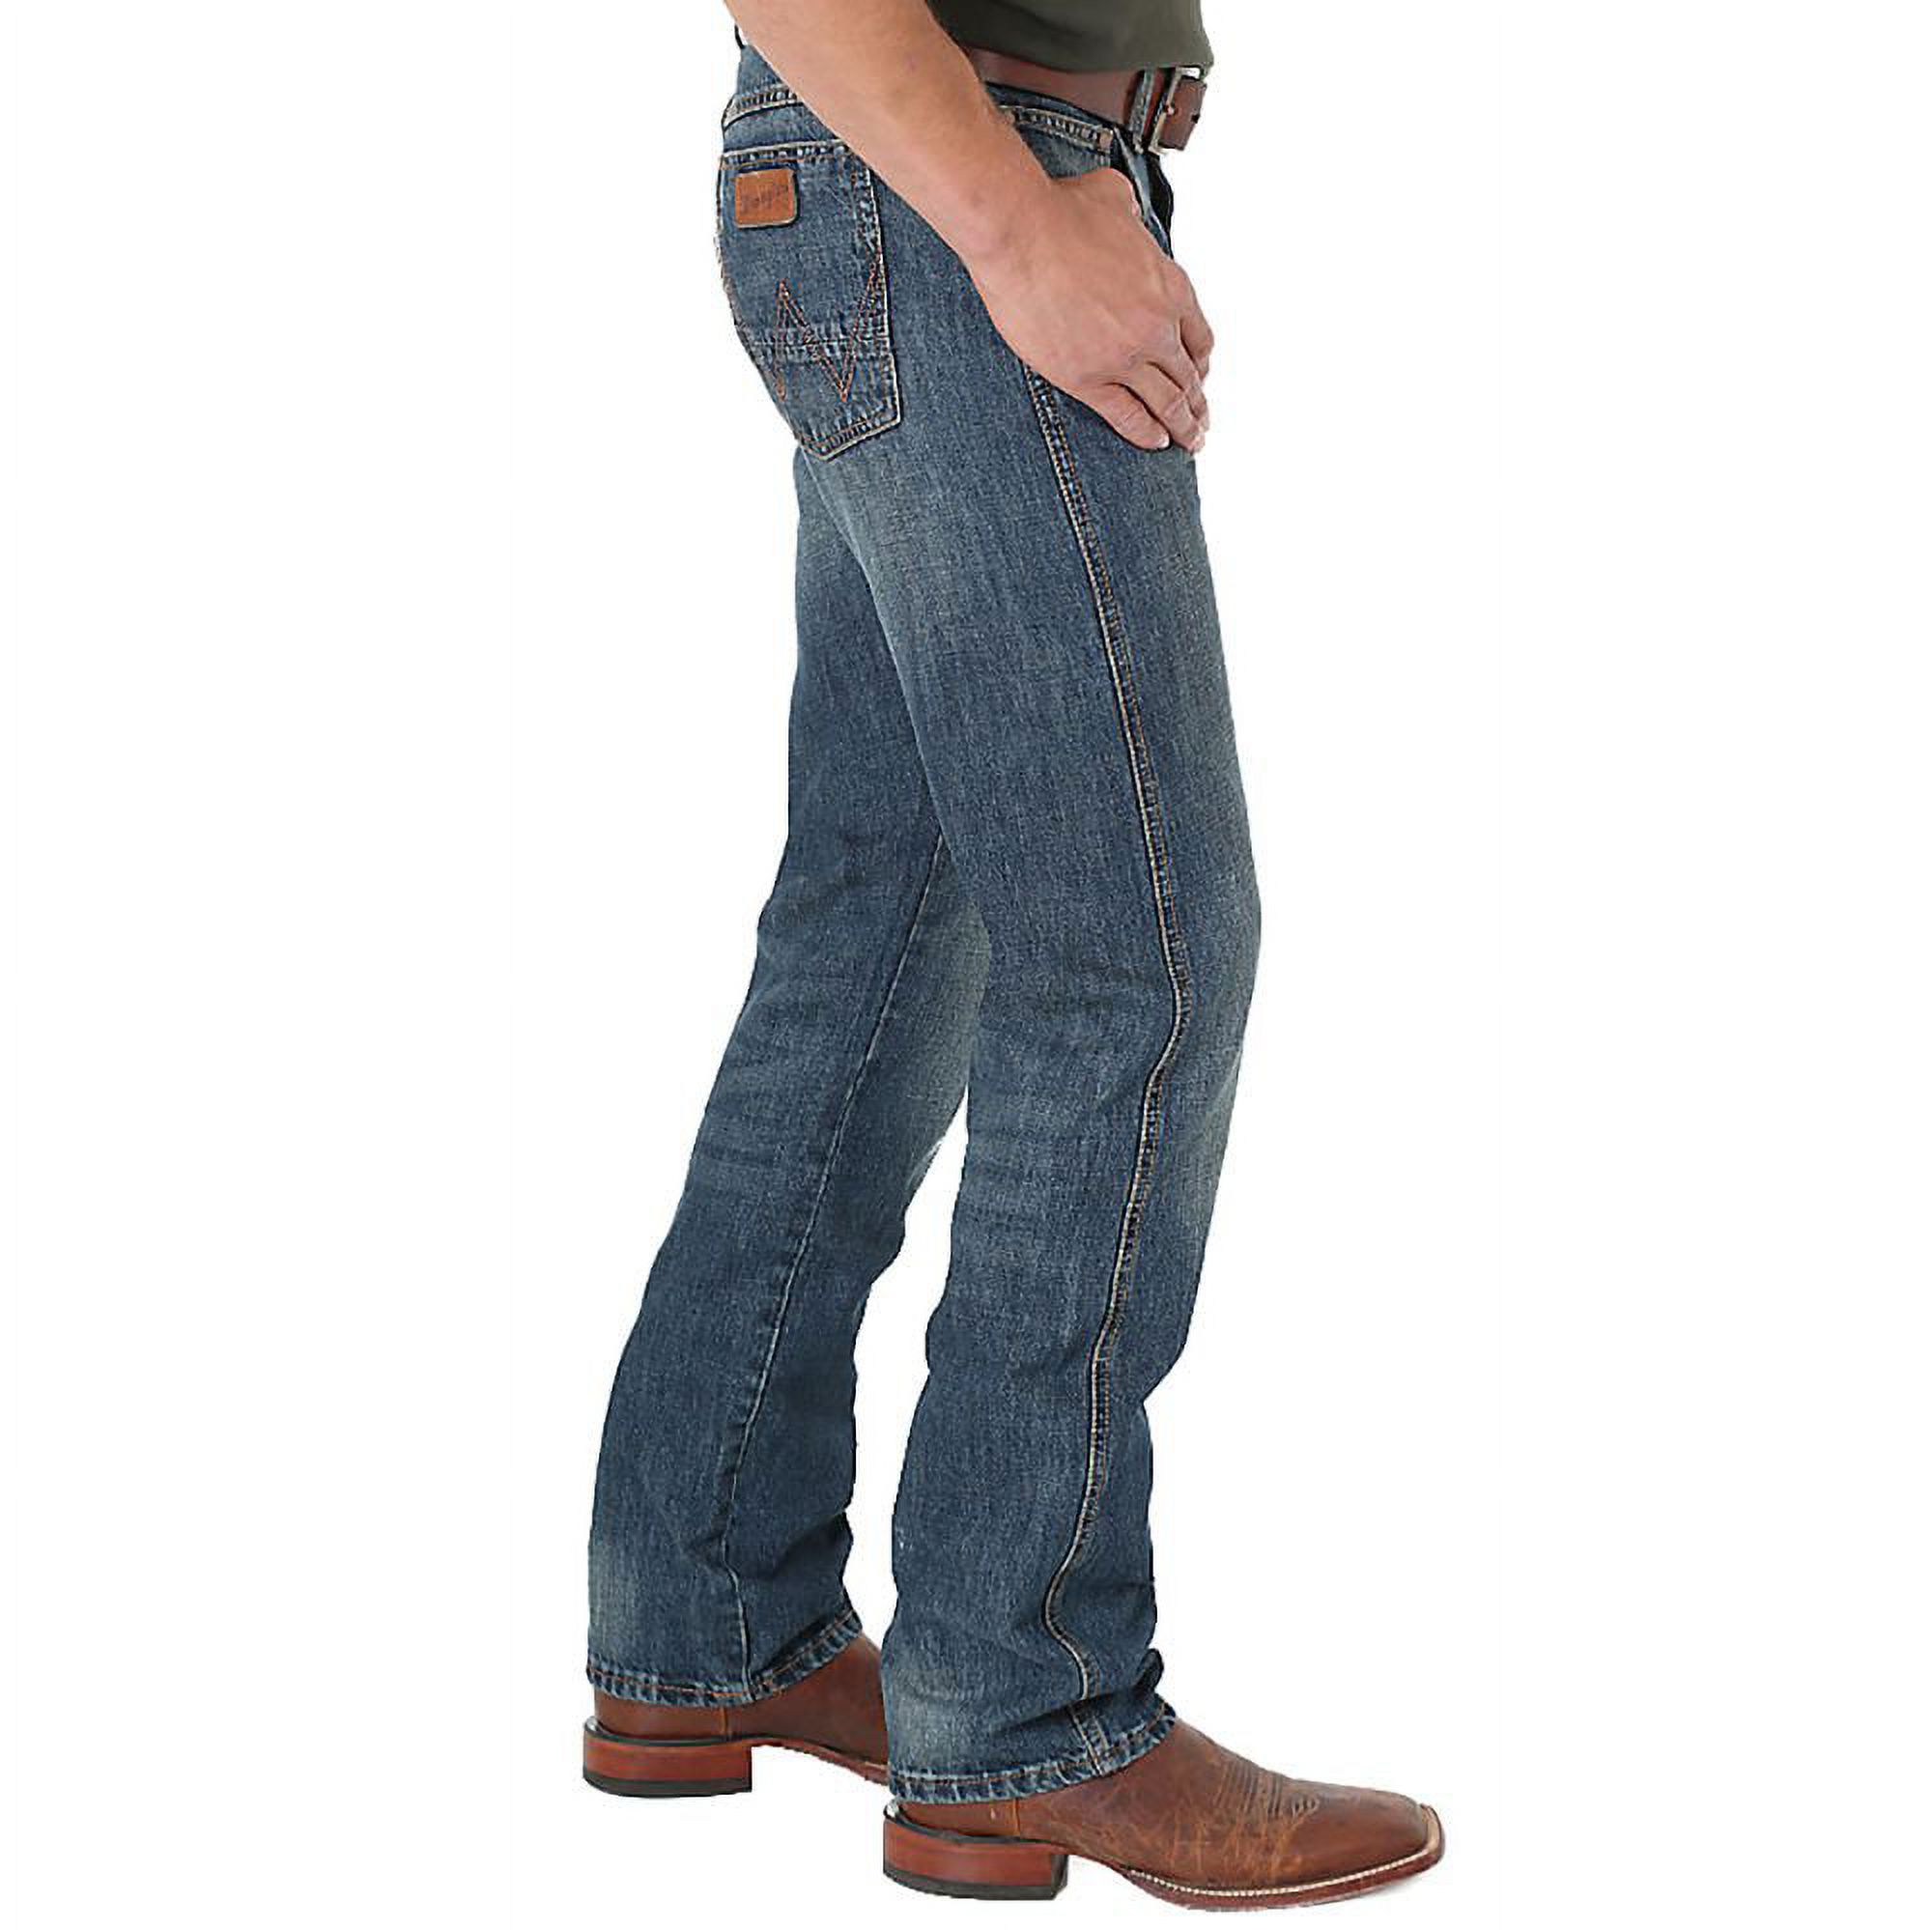 88MWZDK Wrangler Retro Slim Jean - image 3 of 3